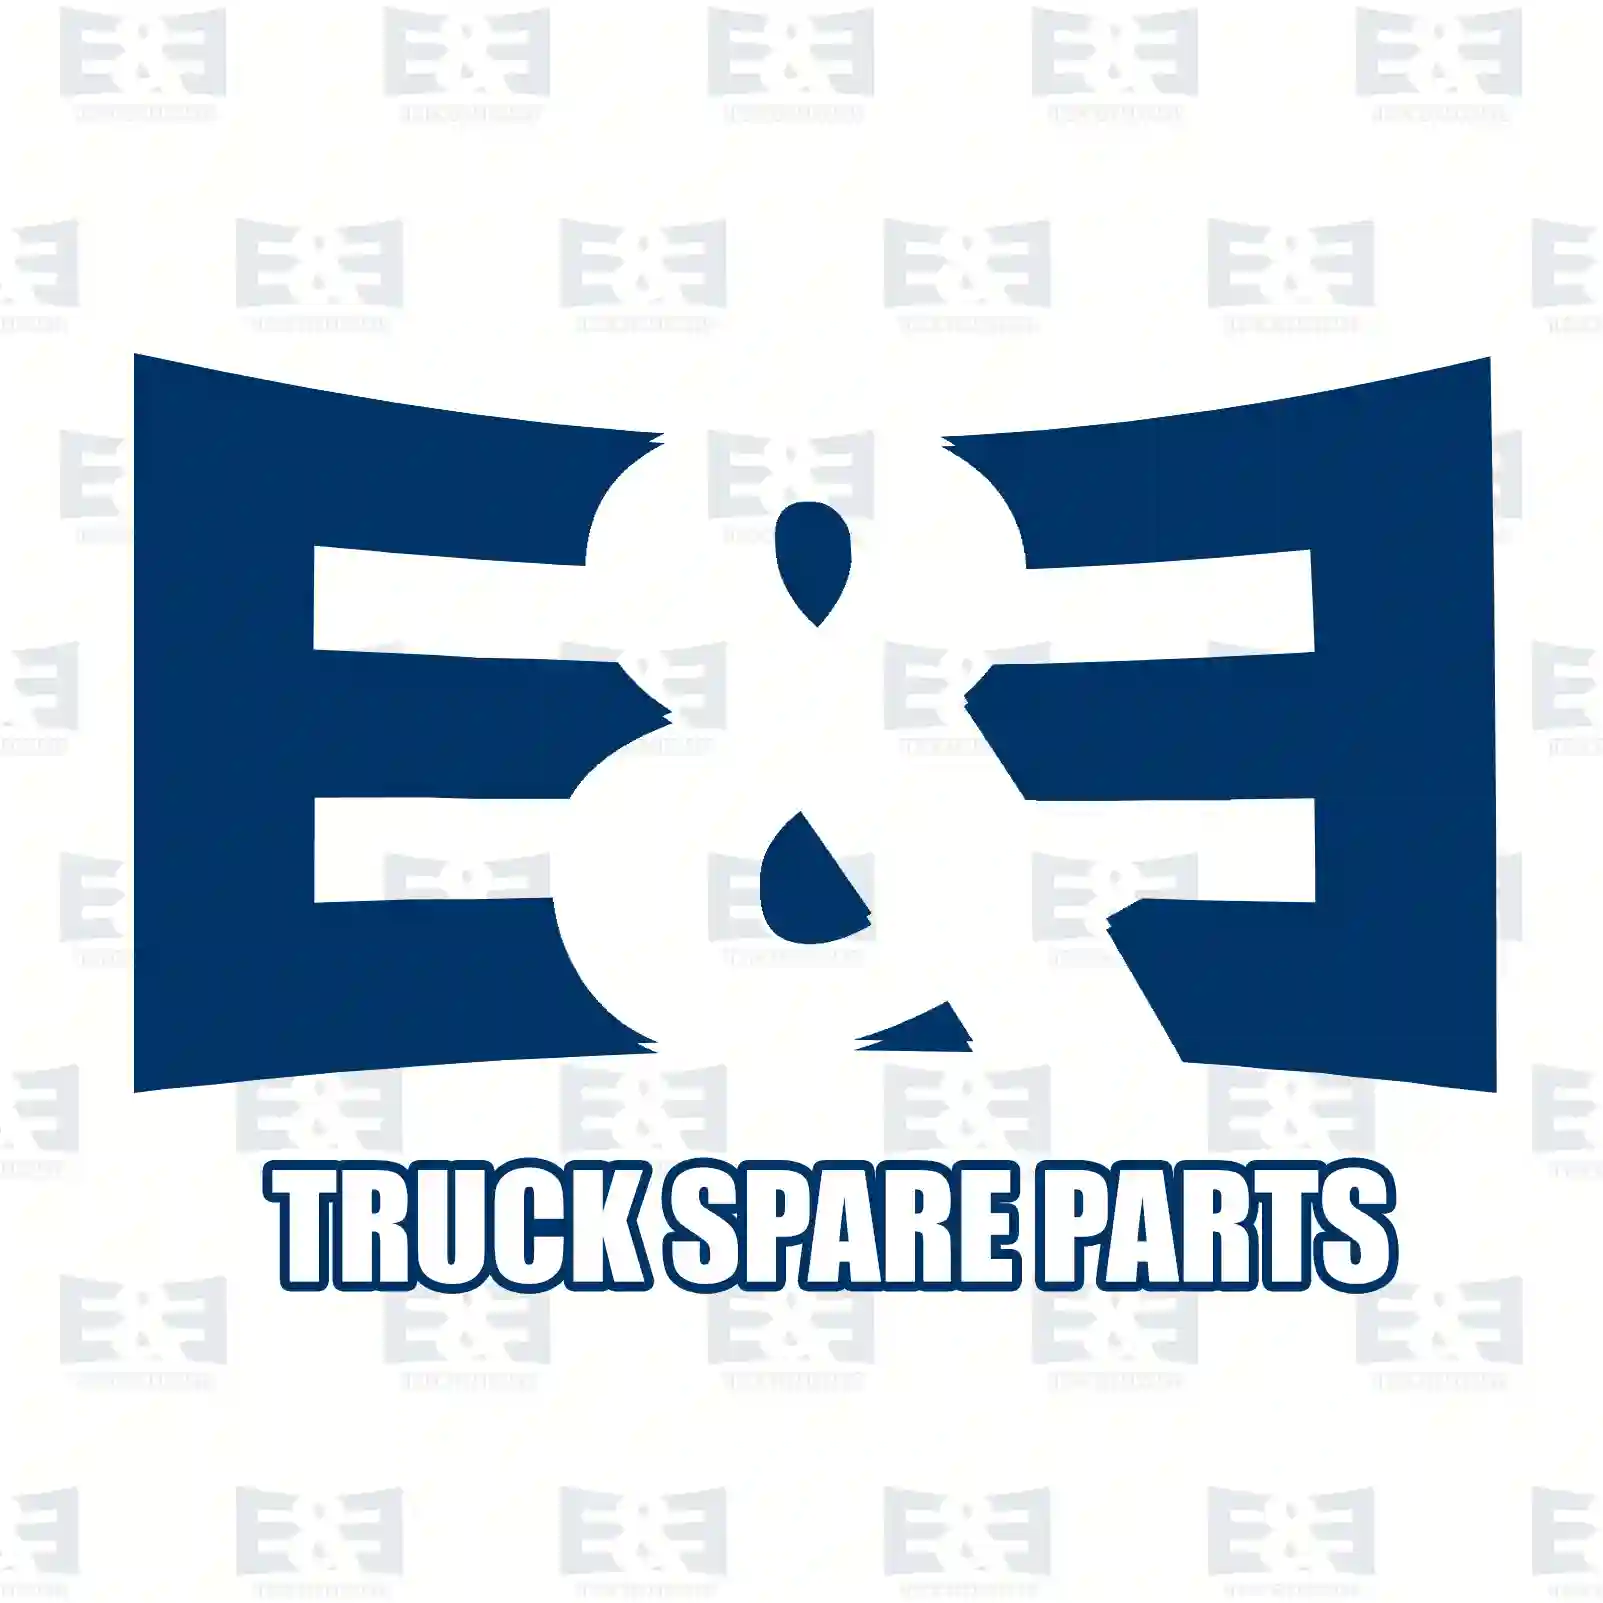 EBS sensor, right, 2E2290351, 81271206202, 2V5927748E ||  2E2290351 E&E Truck Spare Parts | Truck Spare Parts, Auotomotive Spare Parts EBS sensor, right, 2E2290351, 81271206202, 2V5927748E ||  2E2290351 E&E Truck Spare Parts | Truck Spare Parts, Auotomotive Spare Parts